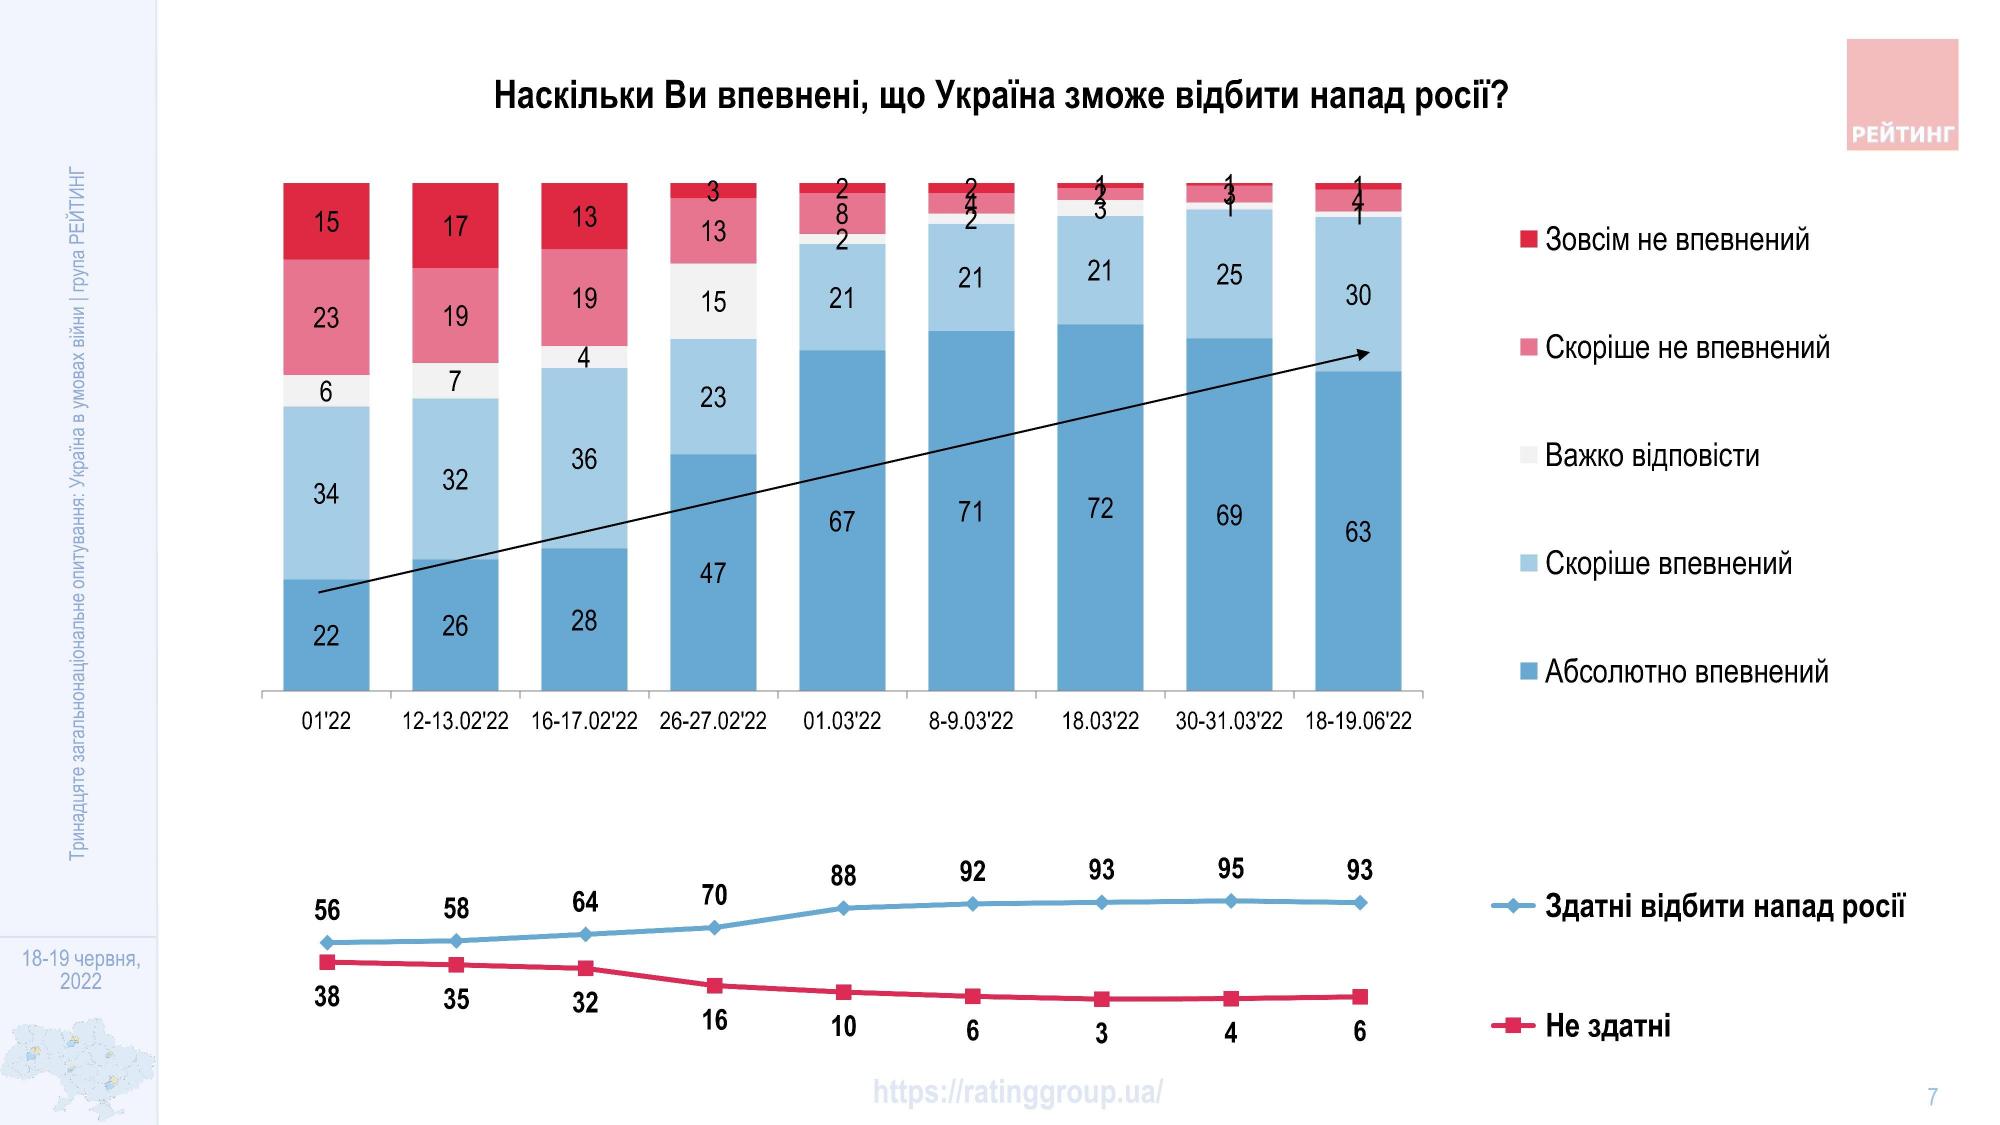 Более 90% украинцев уверены в победе: сколько потребуется времени